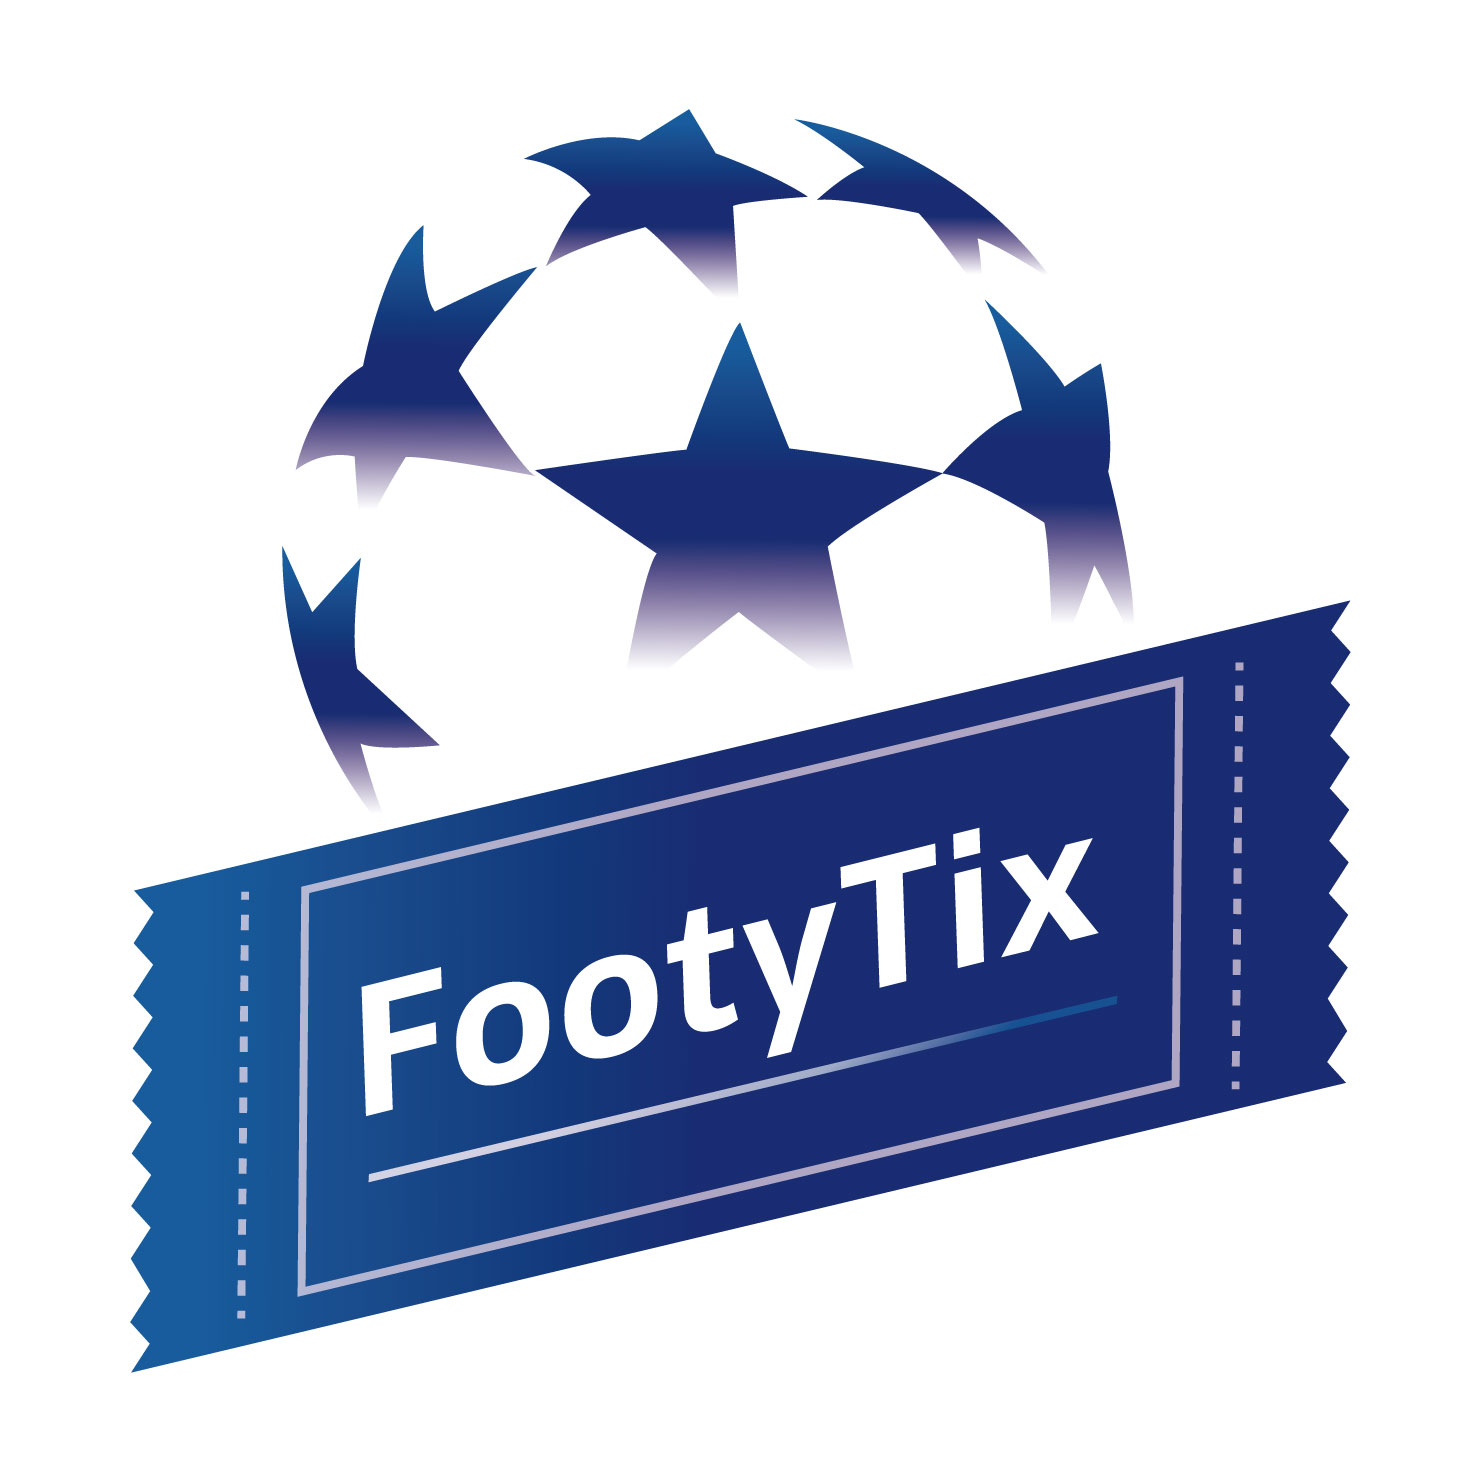 海外サッカー観るにはdaznか スカパーか 1年間使ってみて感じたメリット デメリット Footytix 海外サッカーチケット攻略ブログ